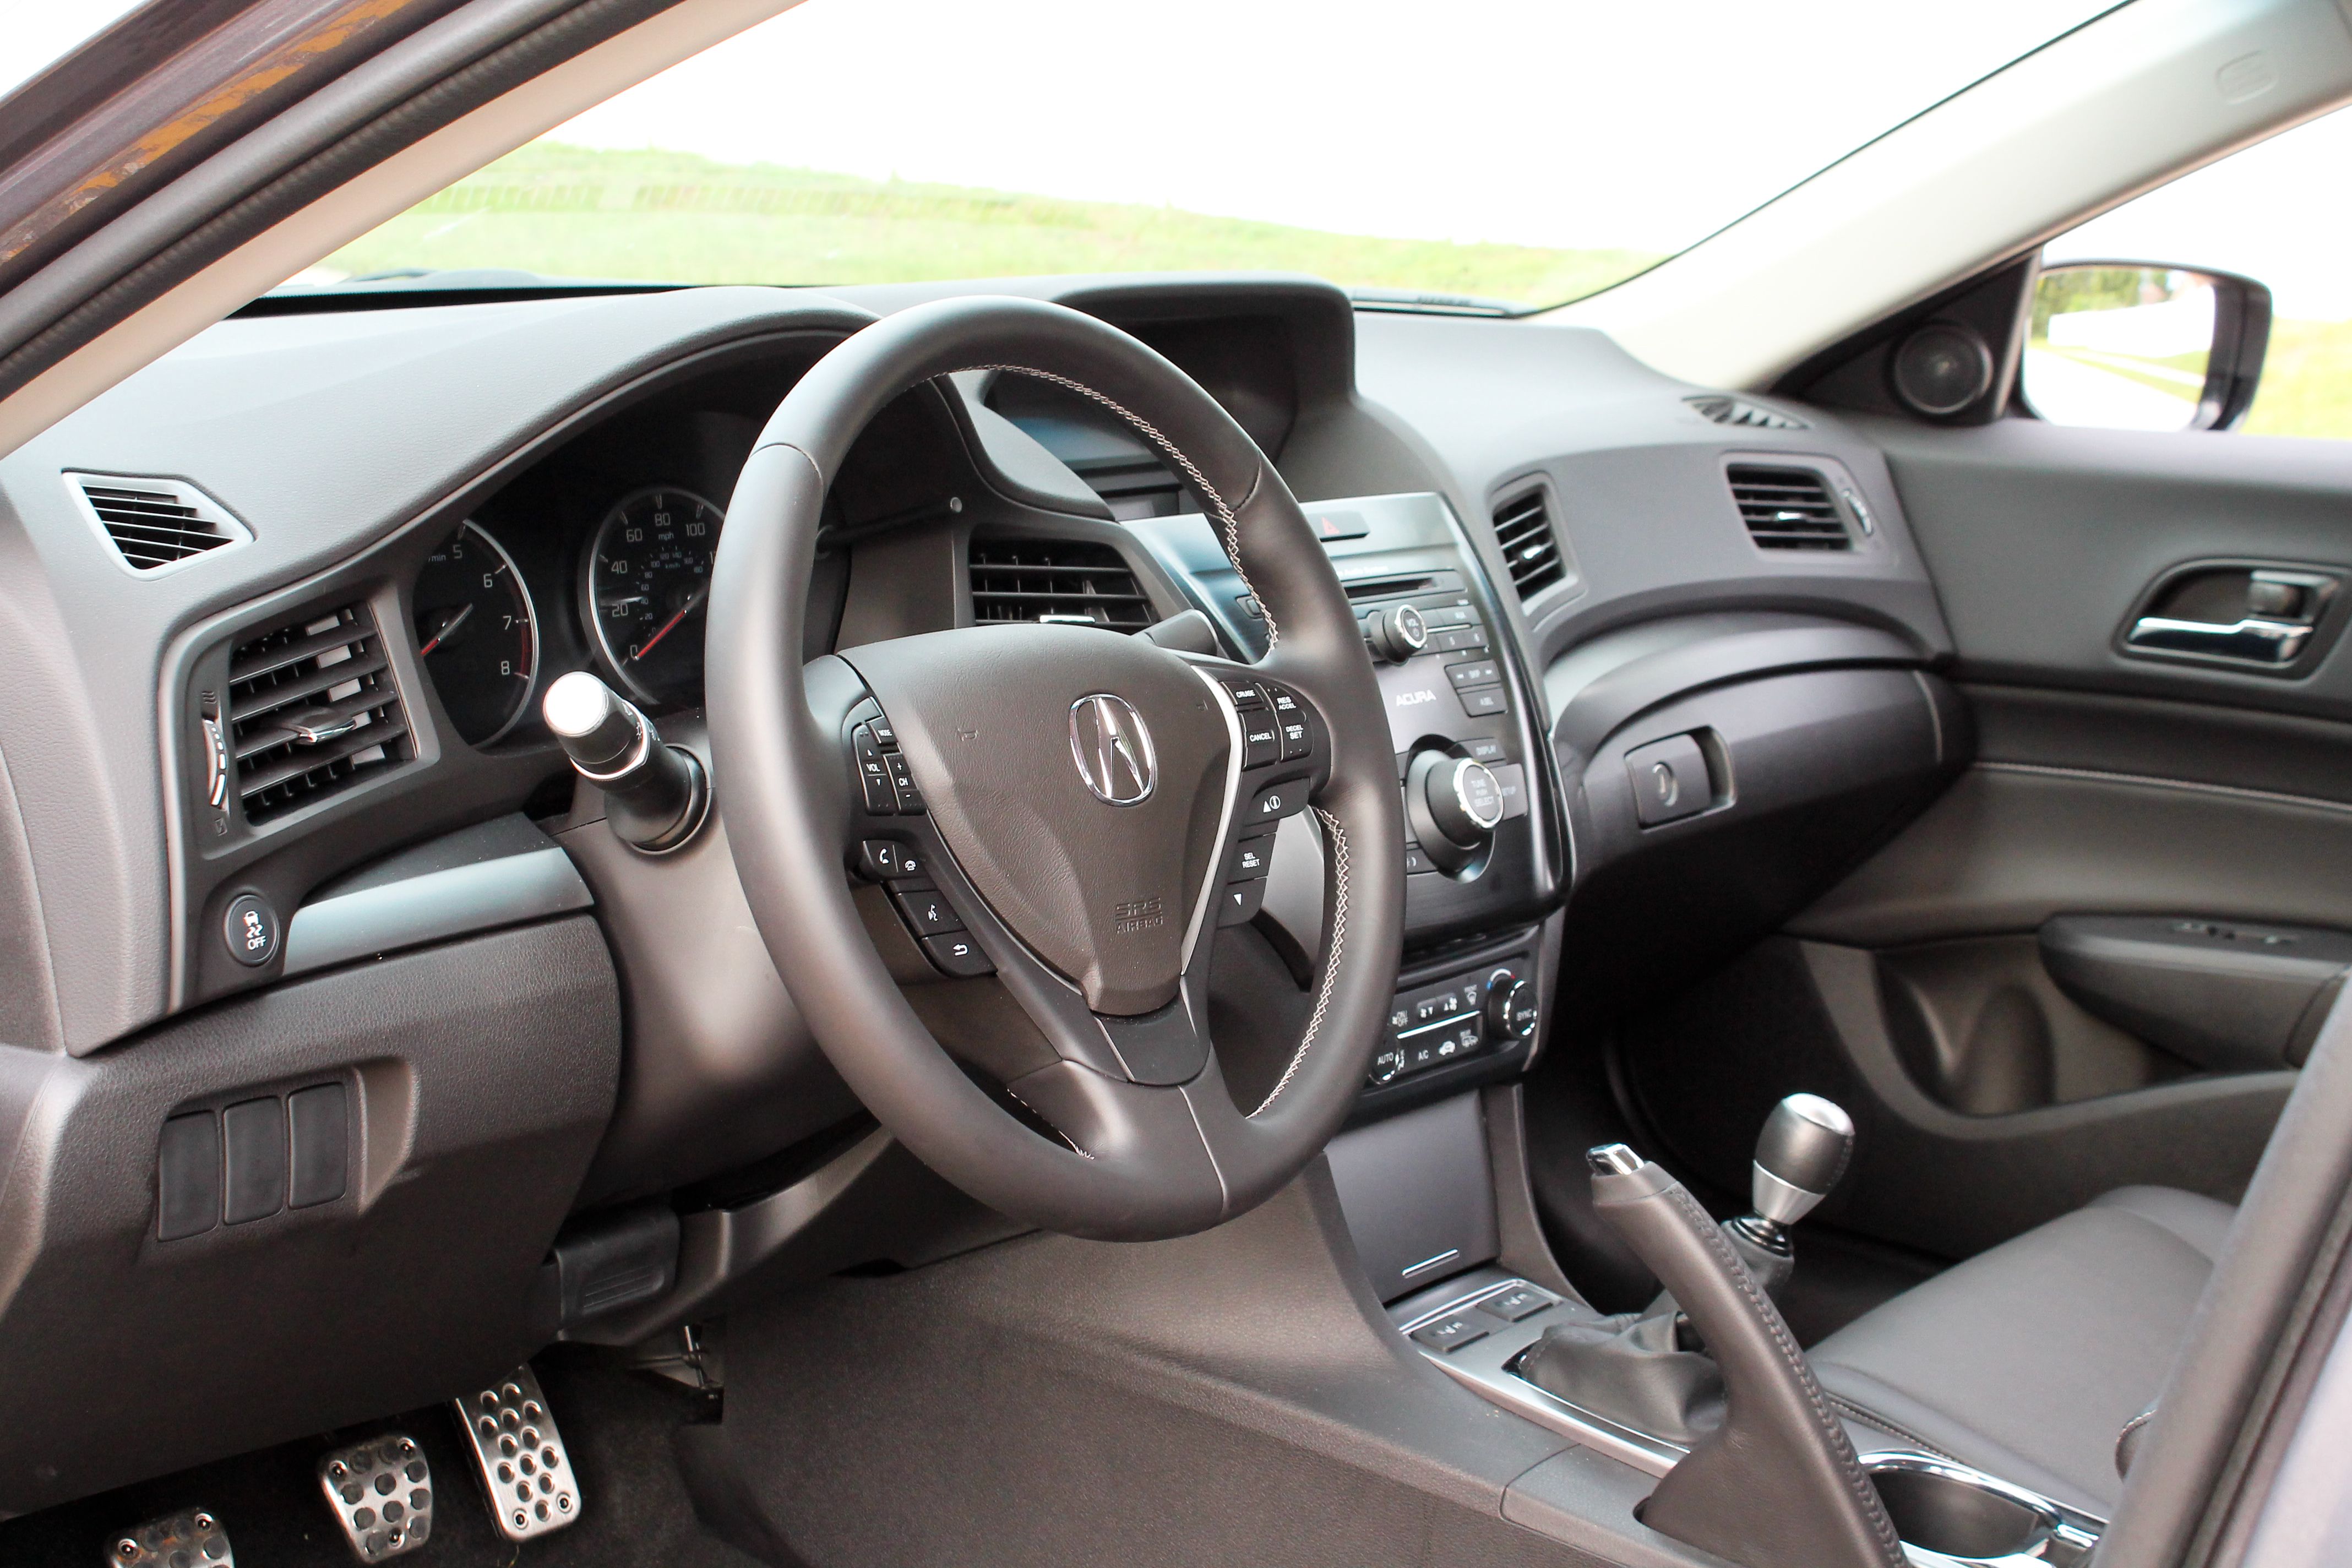 2015 Acura ILX 2.4L Premium - Driven